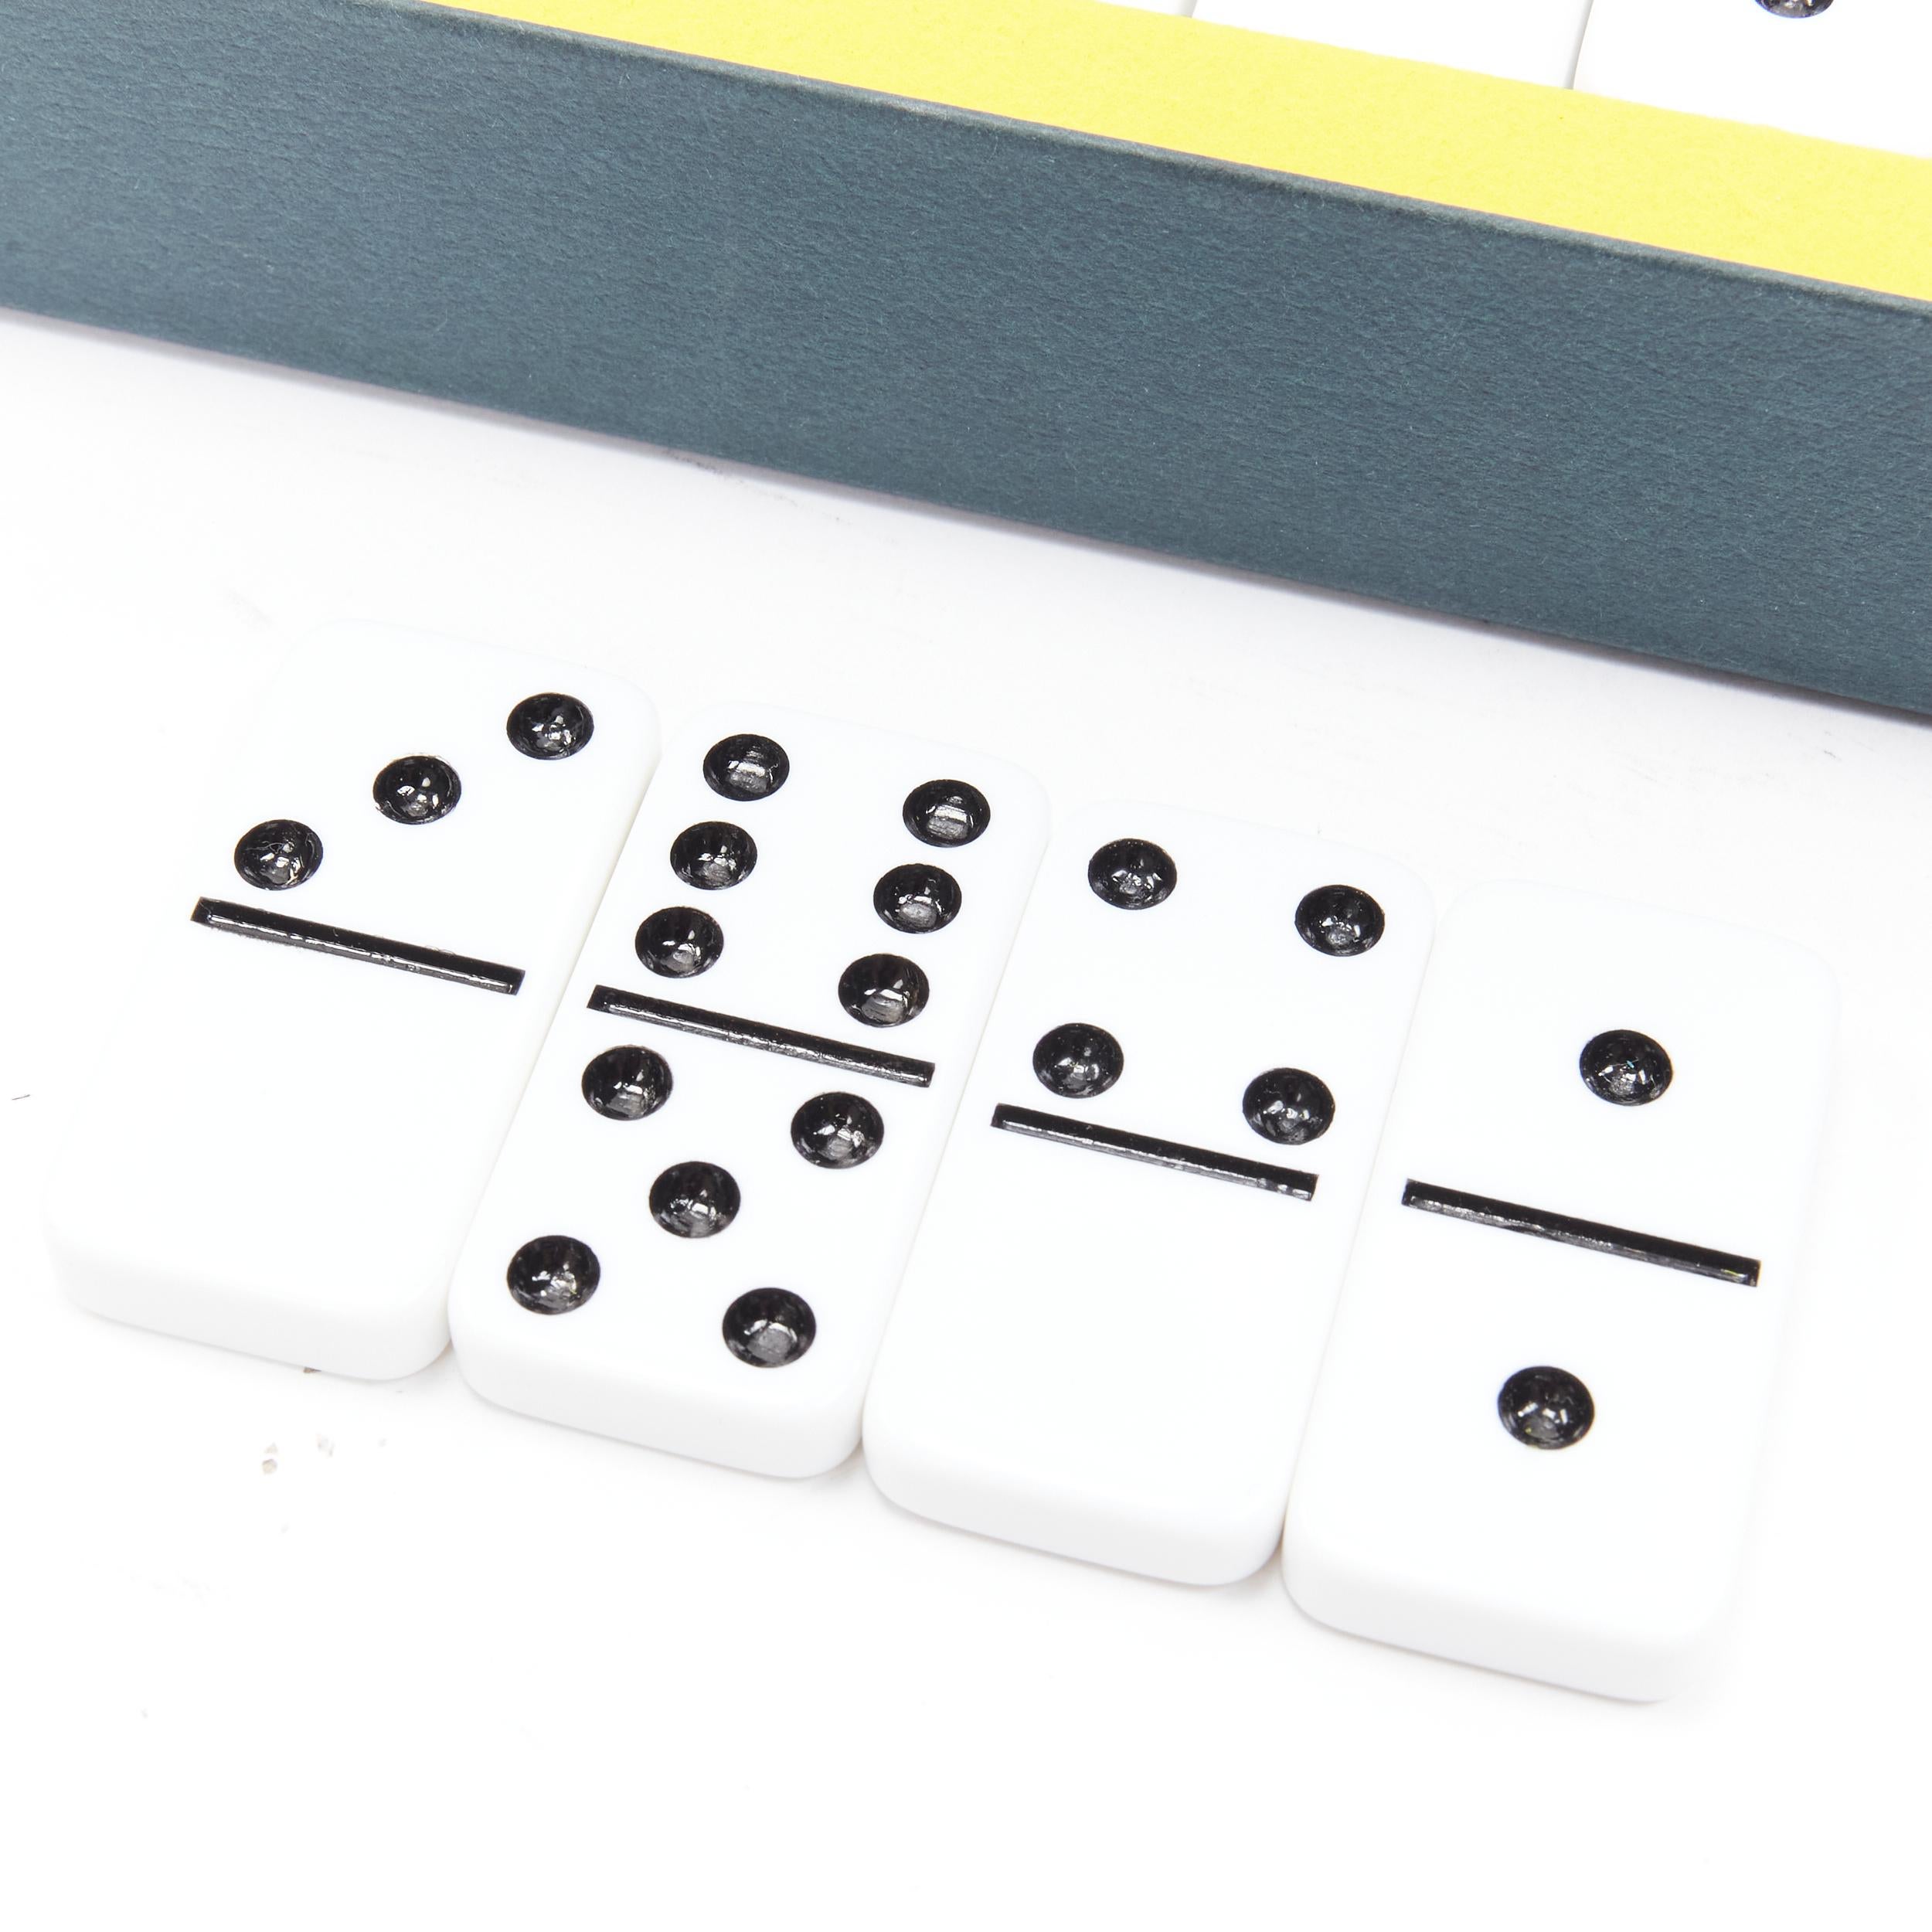 domino boards for sale